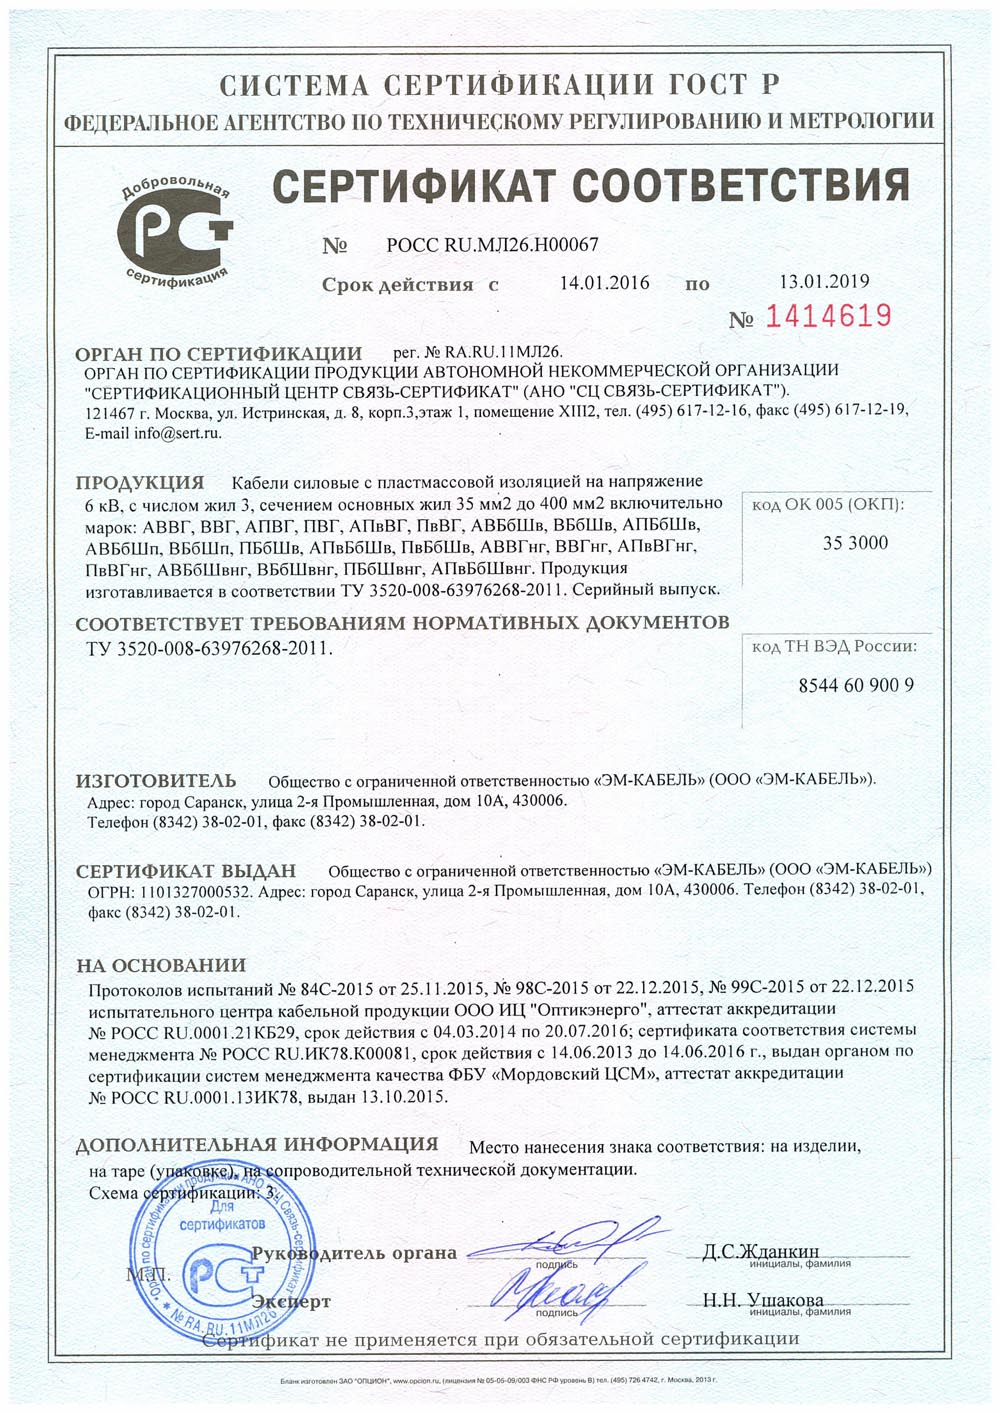 Сертификат соответствия кабелей АВББШВ на напряжение 6 кВ новый